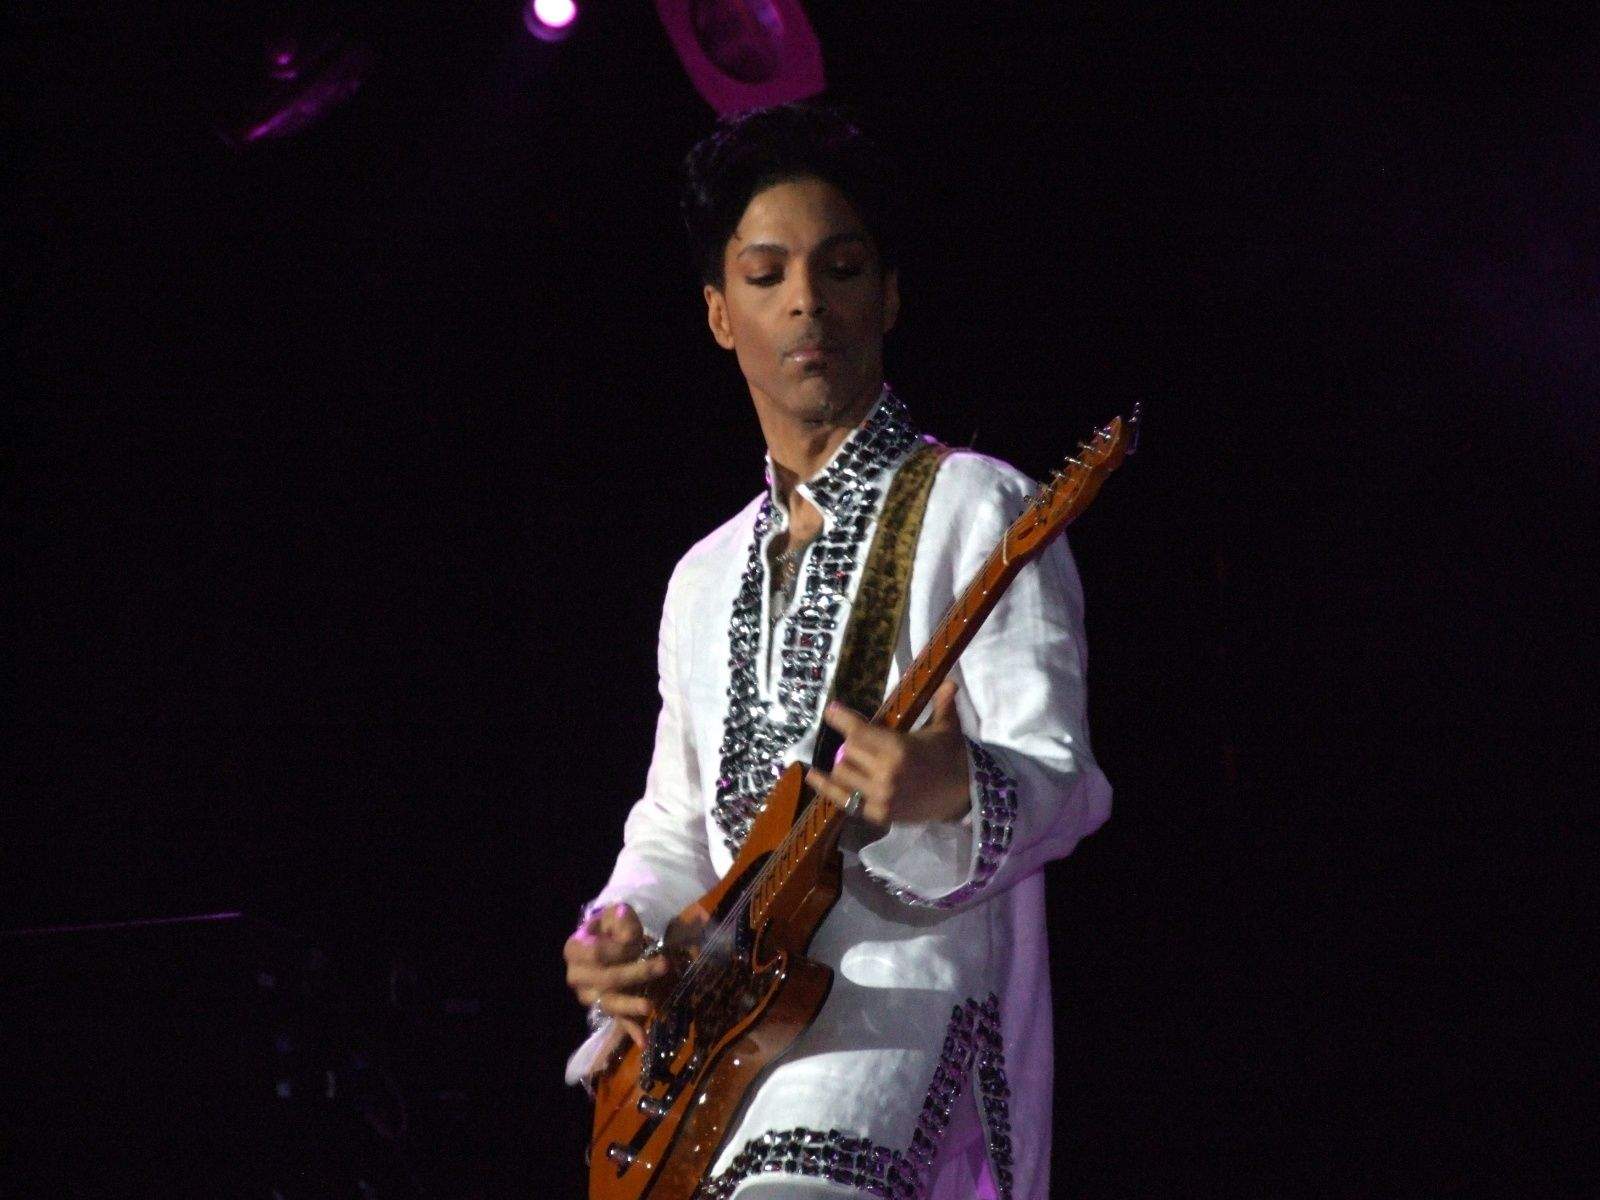 The Purple One at the Coachella Festival in 2008.